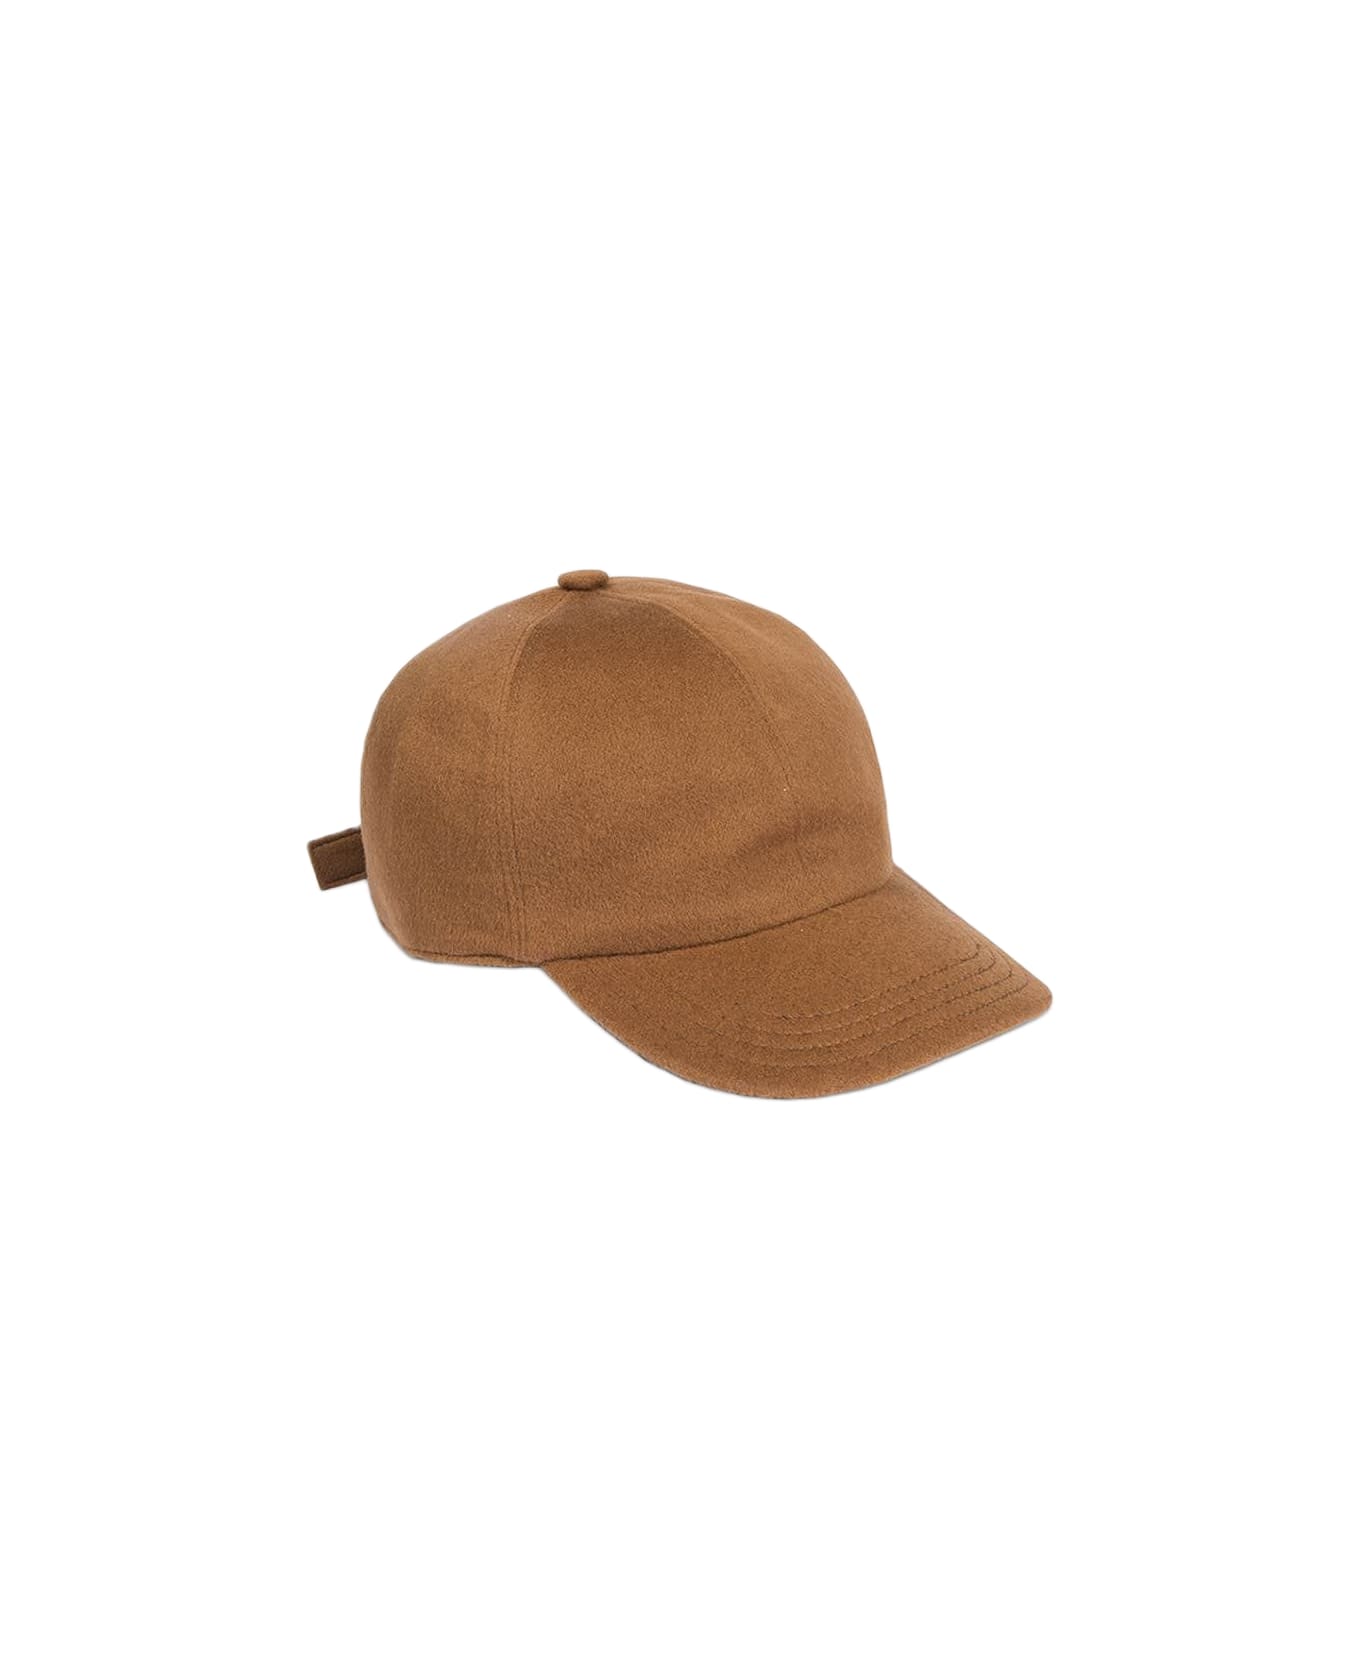 Larusmiani Baseball Cap Hat - Brown